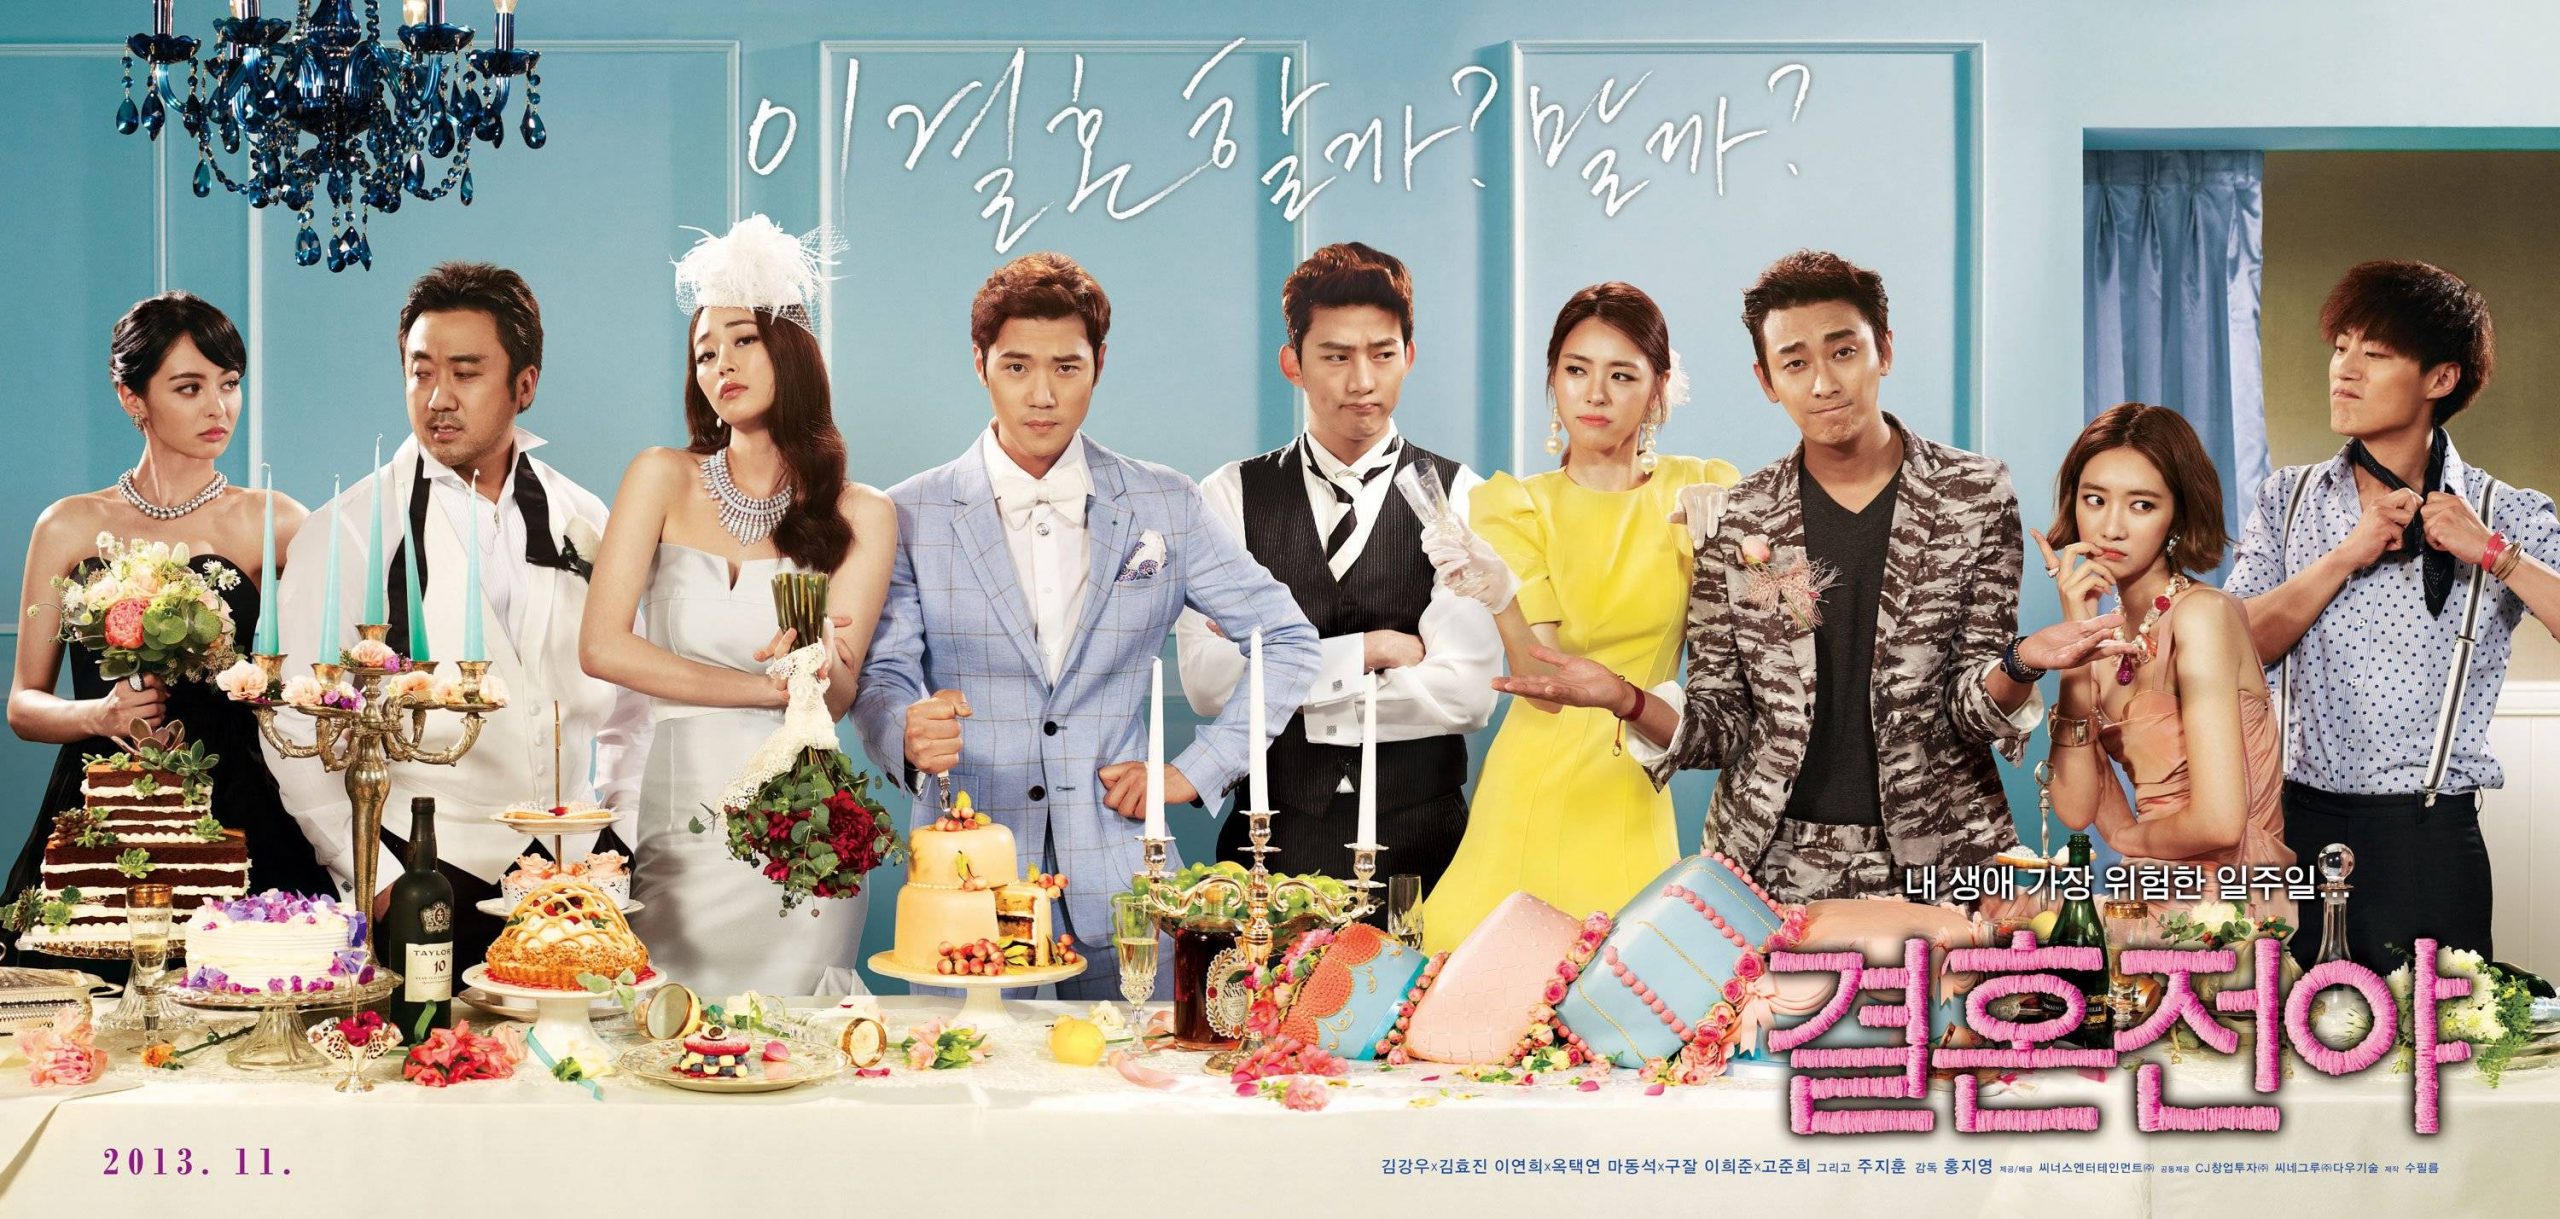 ดูหนังเกาหลี Marriage Blue (2013) ซับไทย